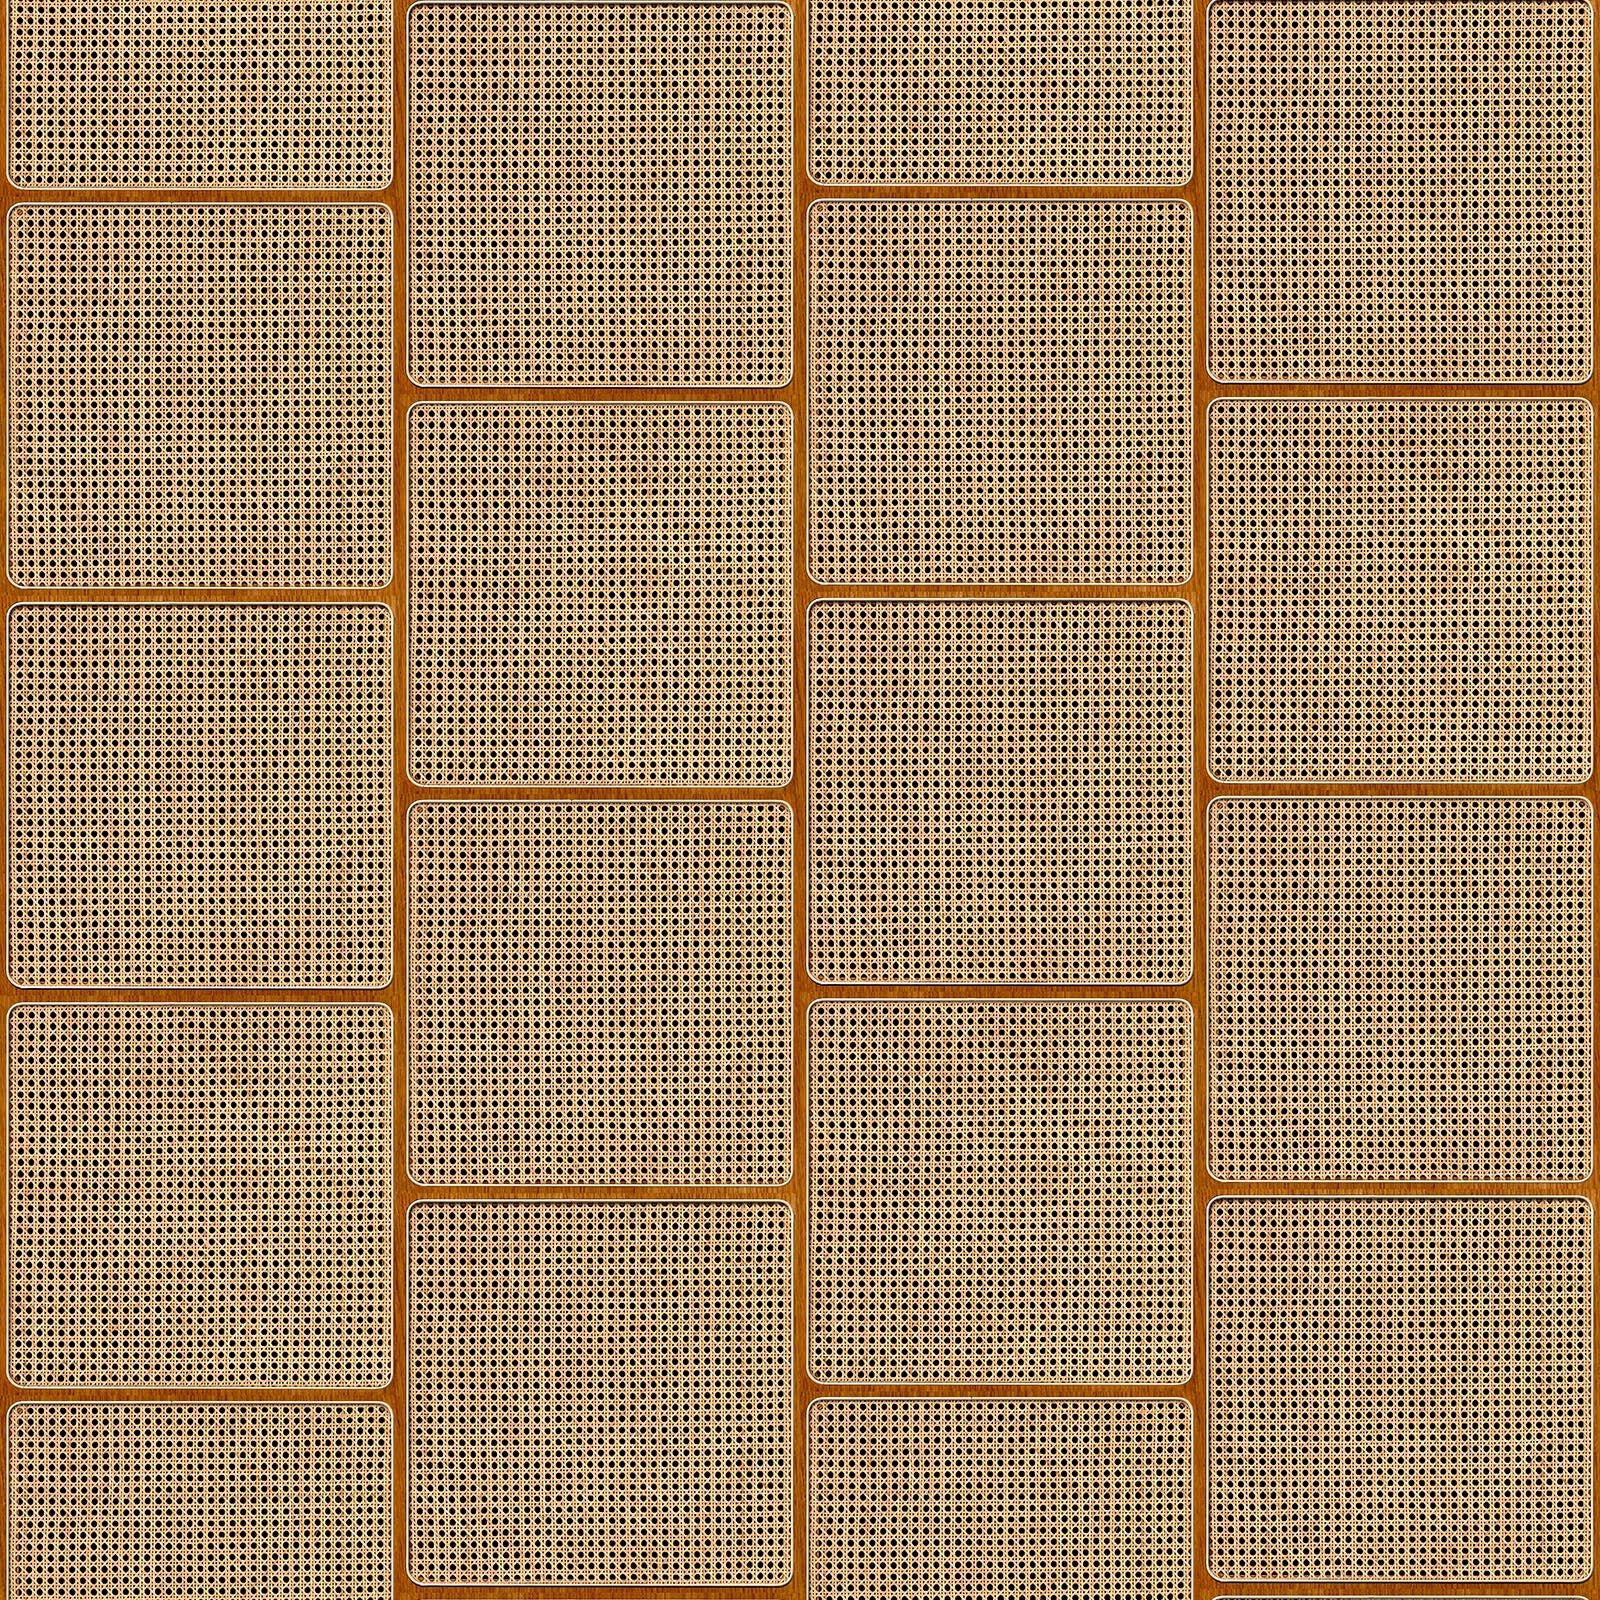 Tapet designer VOS Square Cane Webbing, Oak by Roderick Vos, NLXL, 4.87mp/rola